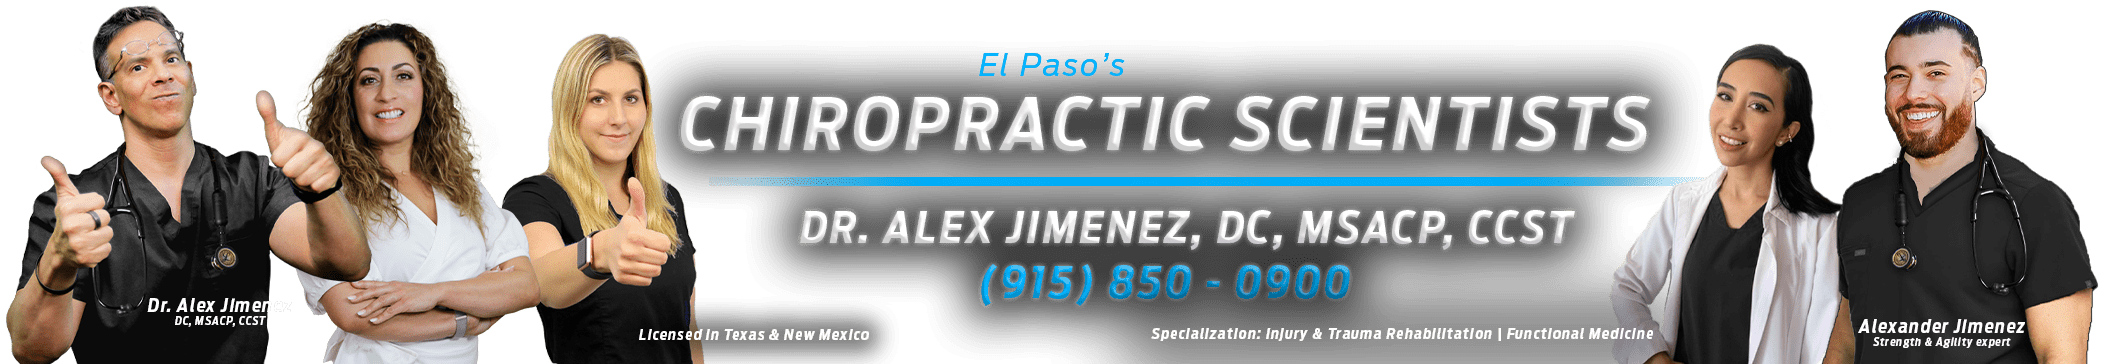 Chiropractic Scientists | 915-850-0900